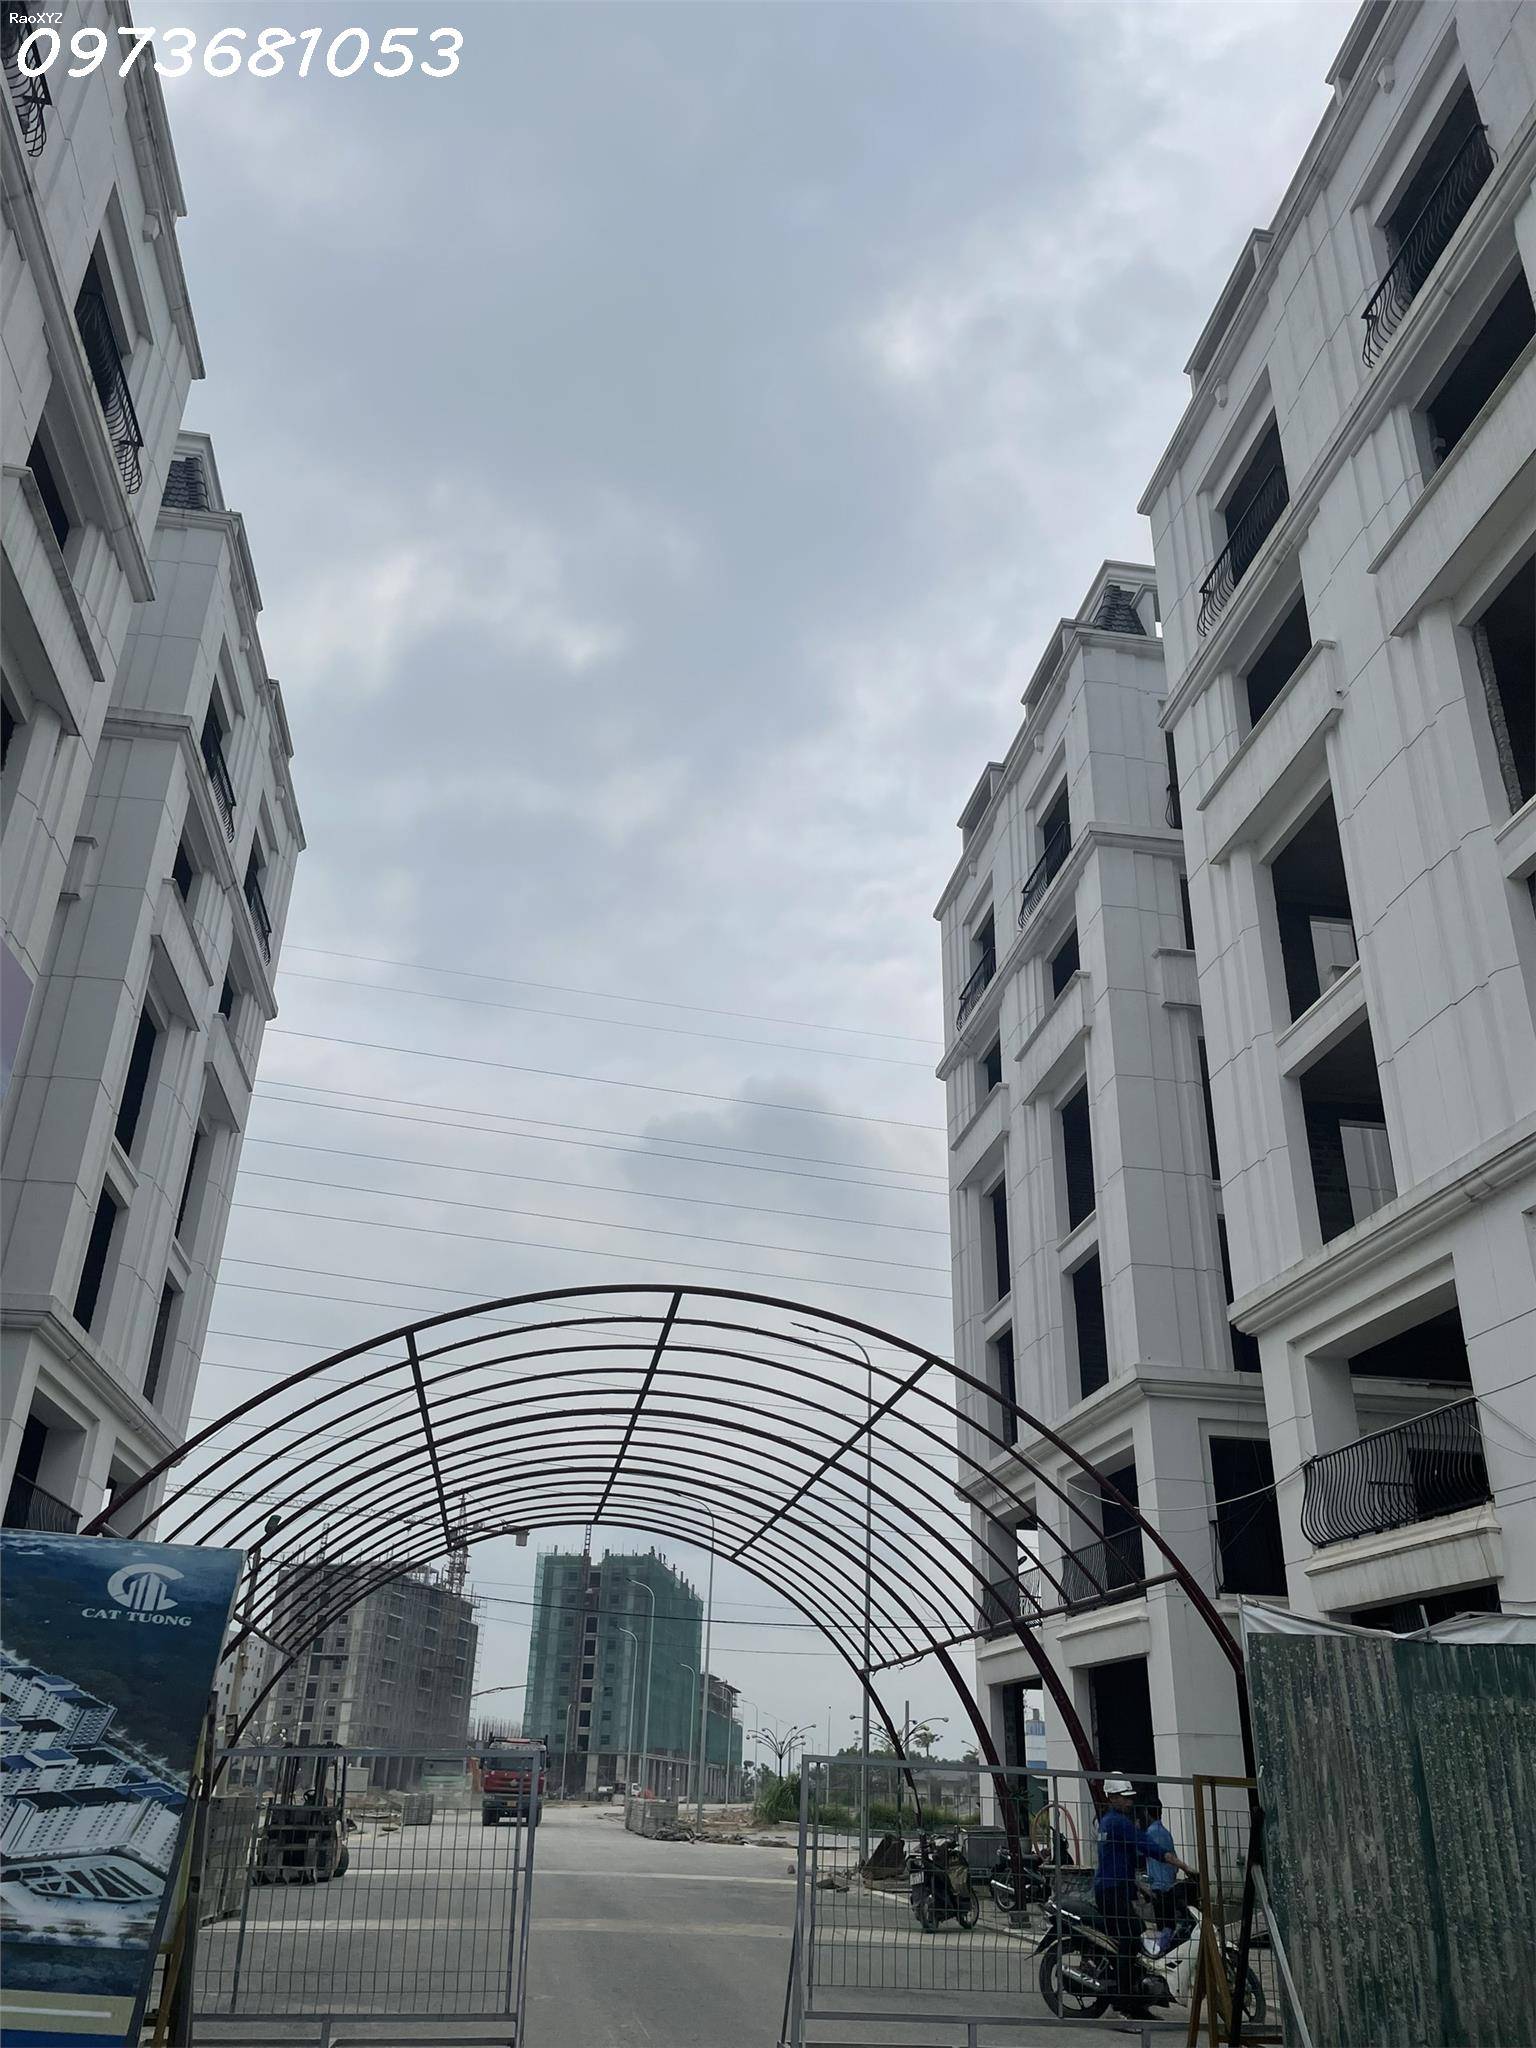 Bán nhà 6 tầng mặt đường 42m nối 2 khu công nghiệp Yên Phong kinh doanh được ngay